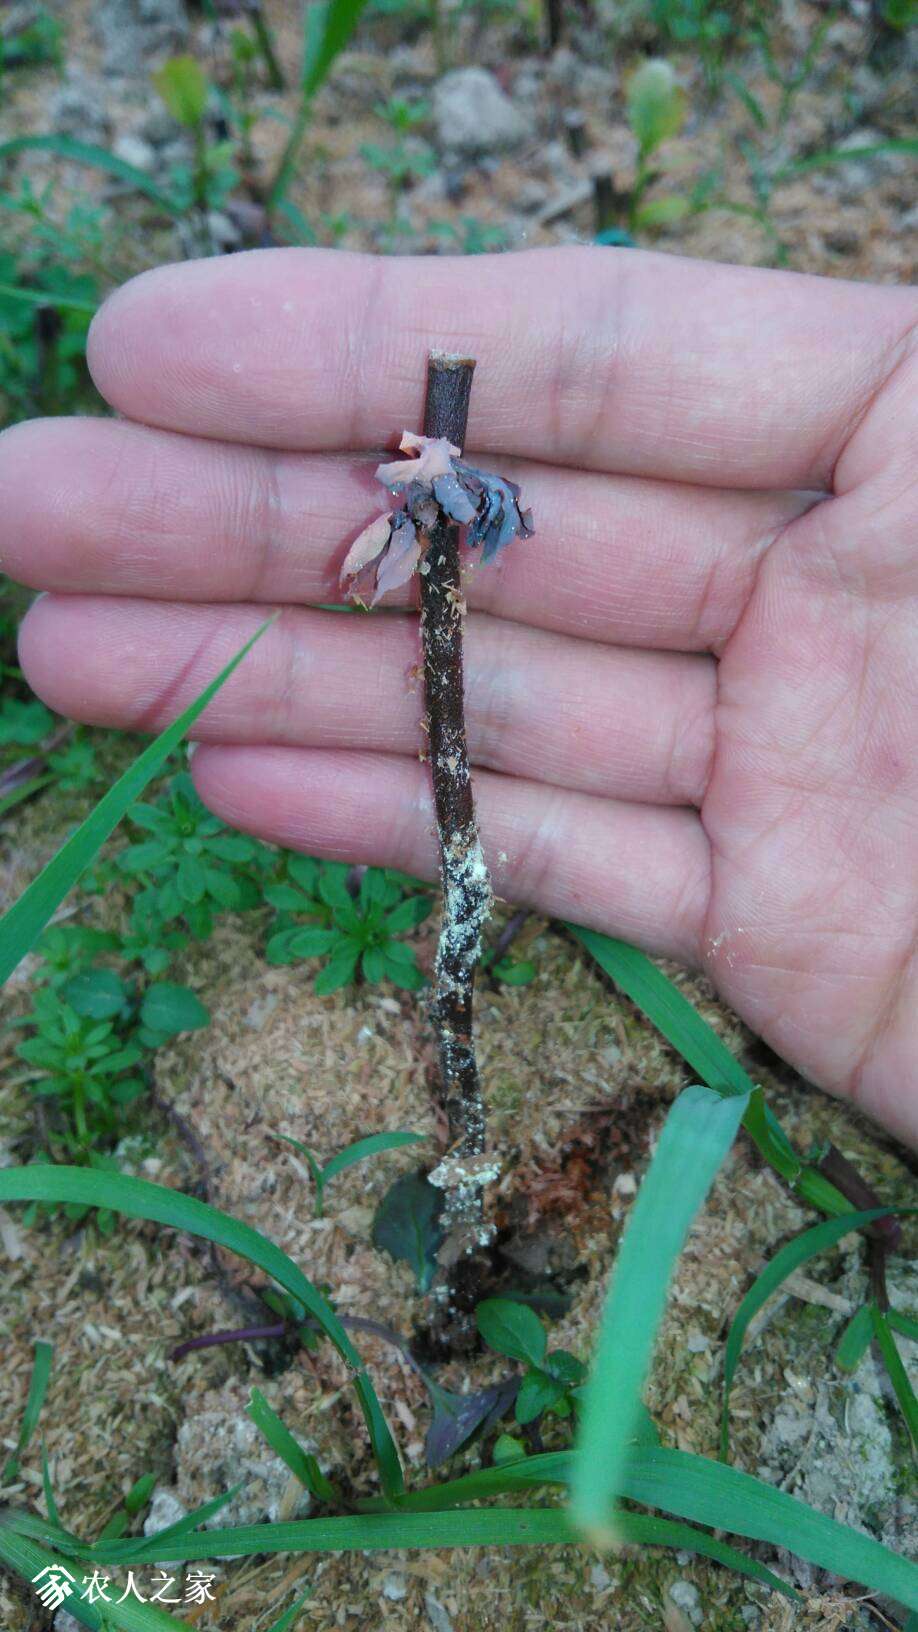 蓝莓插迁,只长芽,不长根,是为何,望高手指点